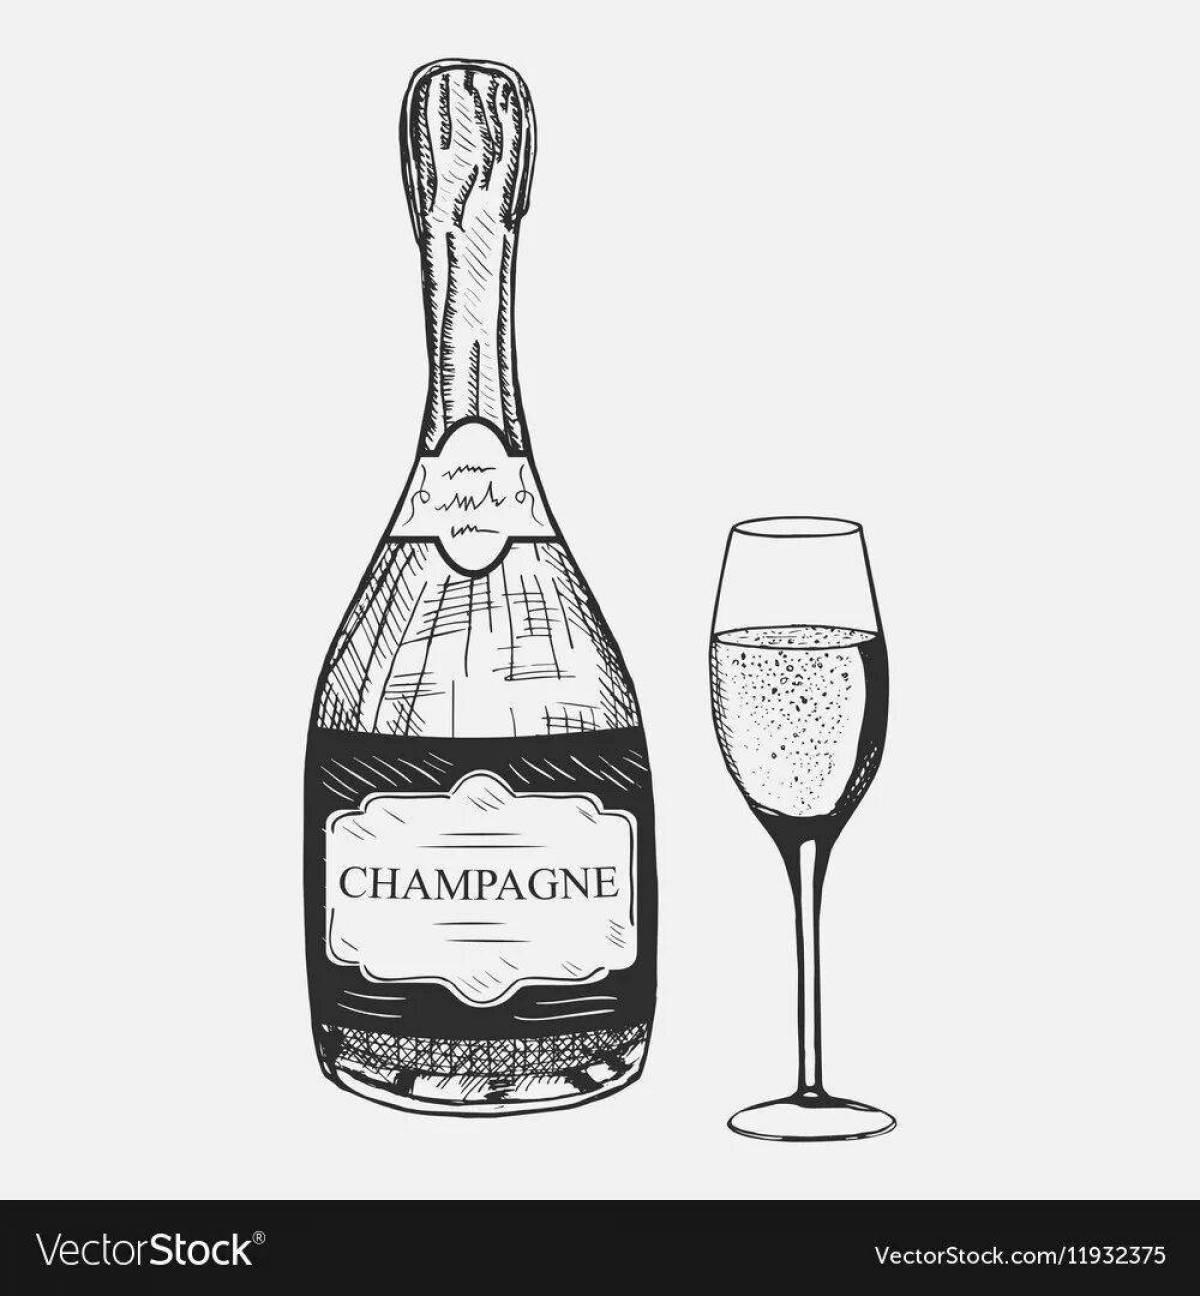 Champagne bottle #5